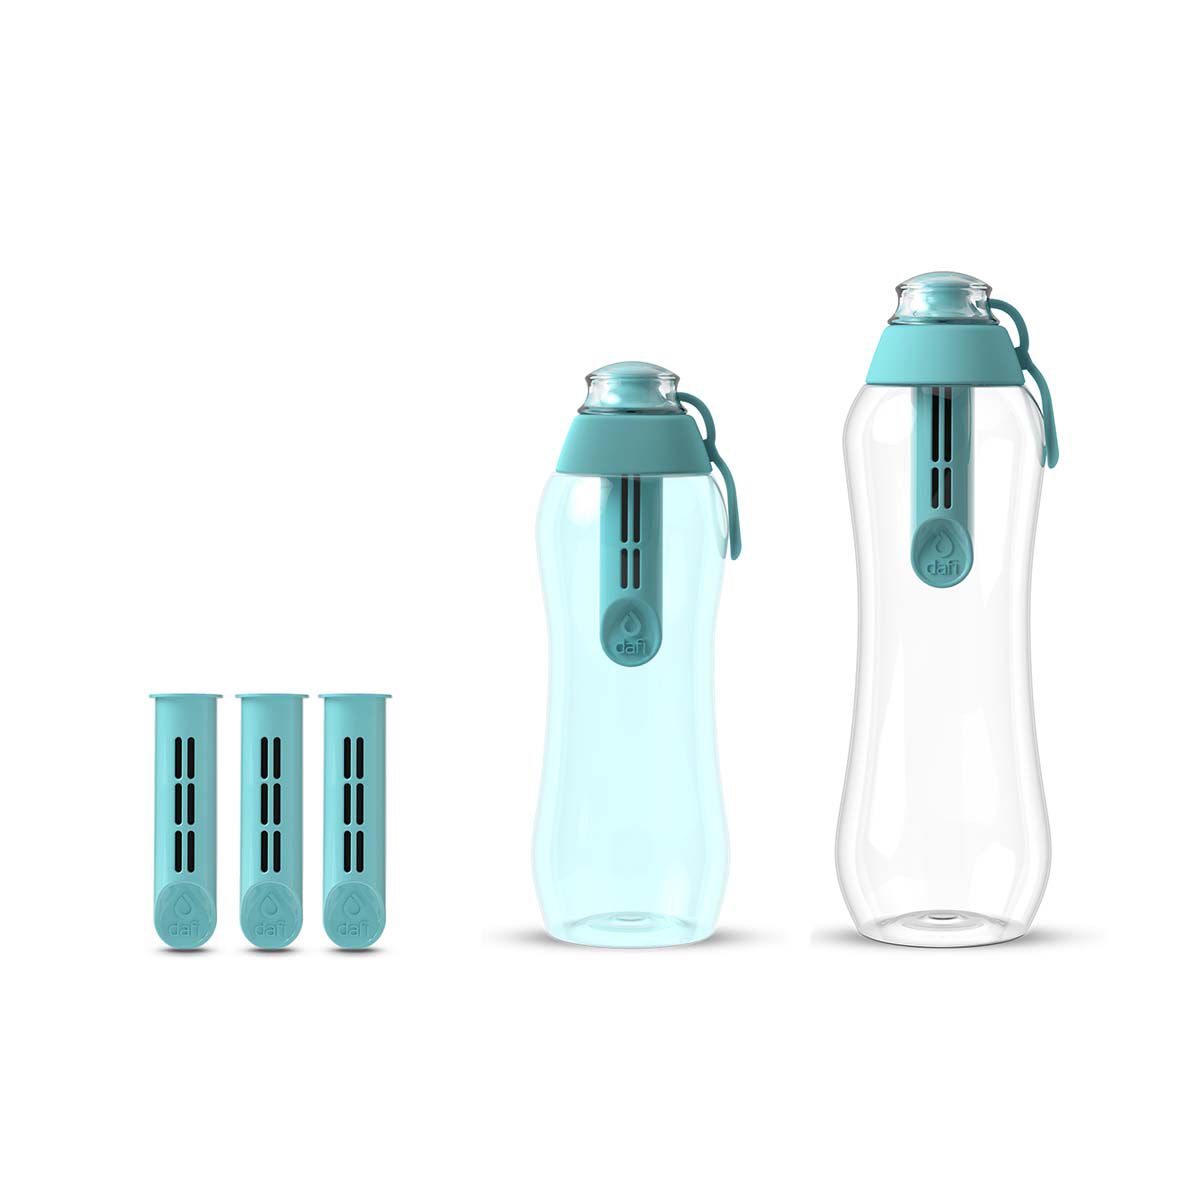 Набор из бутылок с угольным фильтром Dafi Soft, 5 предметов, голубой фото